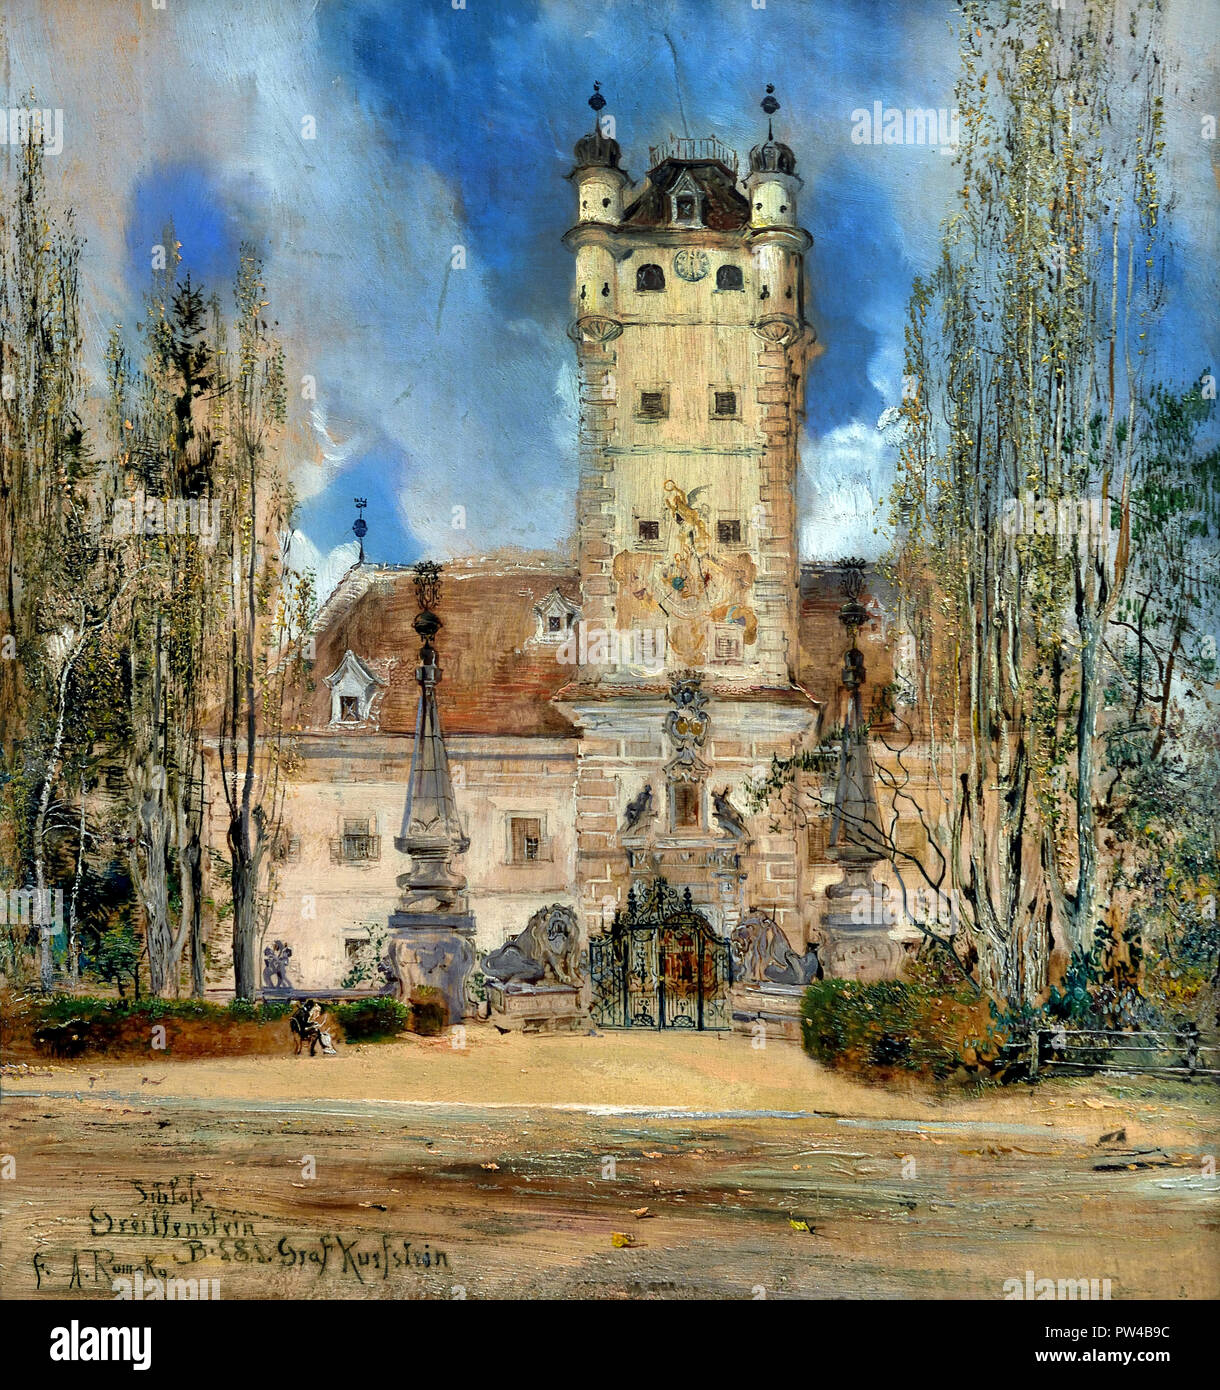 Château Greillenstein par Anton Romako 1832 - 1889 peintre autrichien. L'Autriche . ( Anton Romako a été l'un des grands pionniers du modernisme ) Banque D'Images